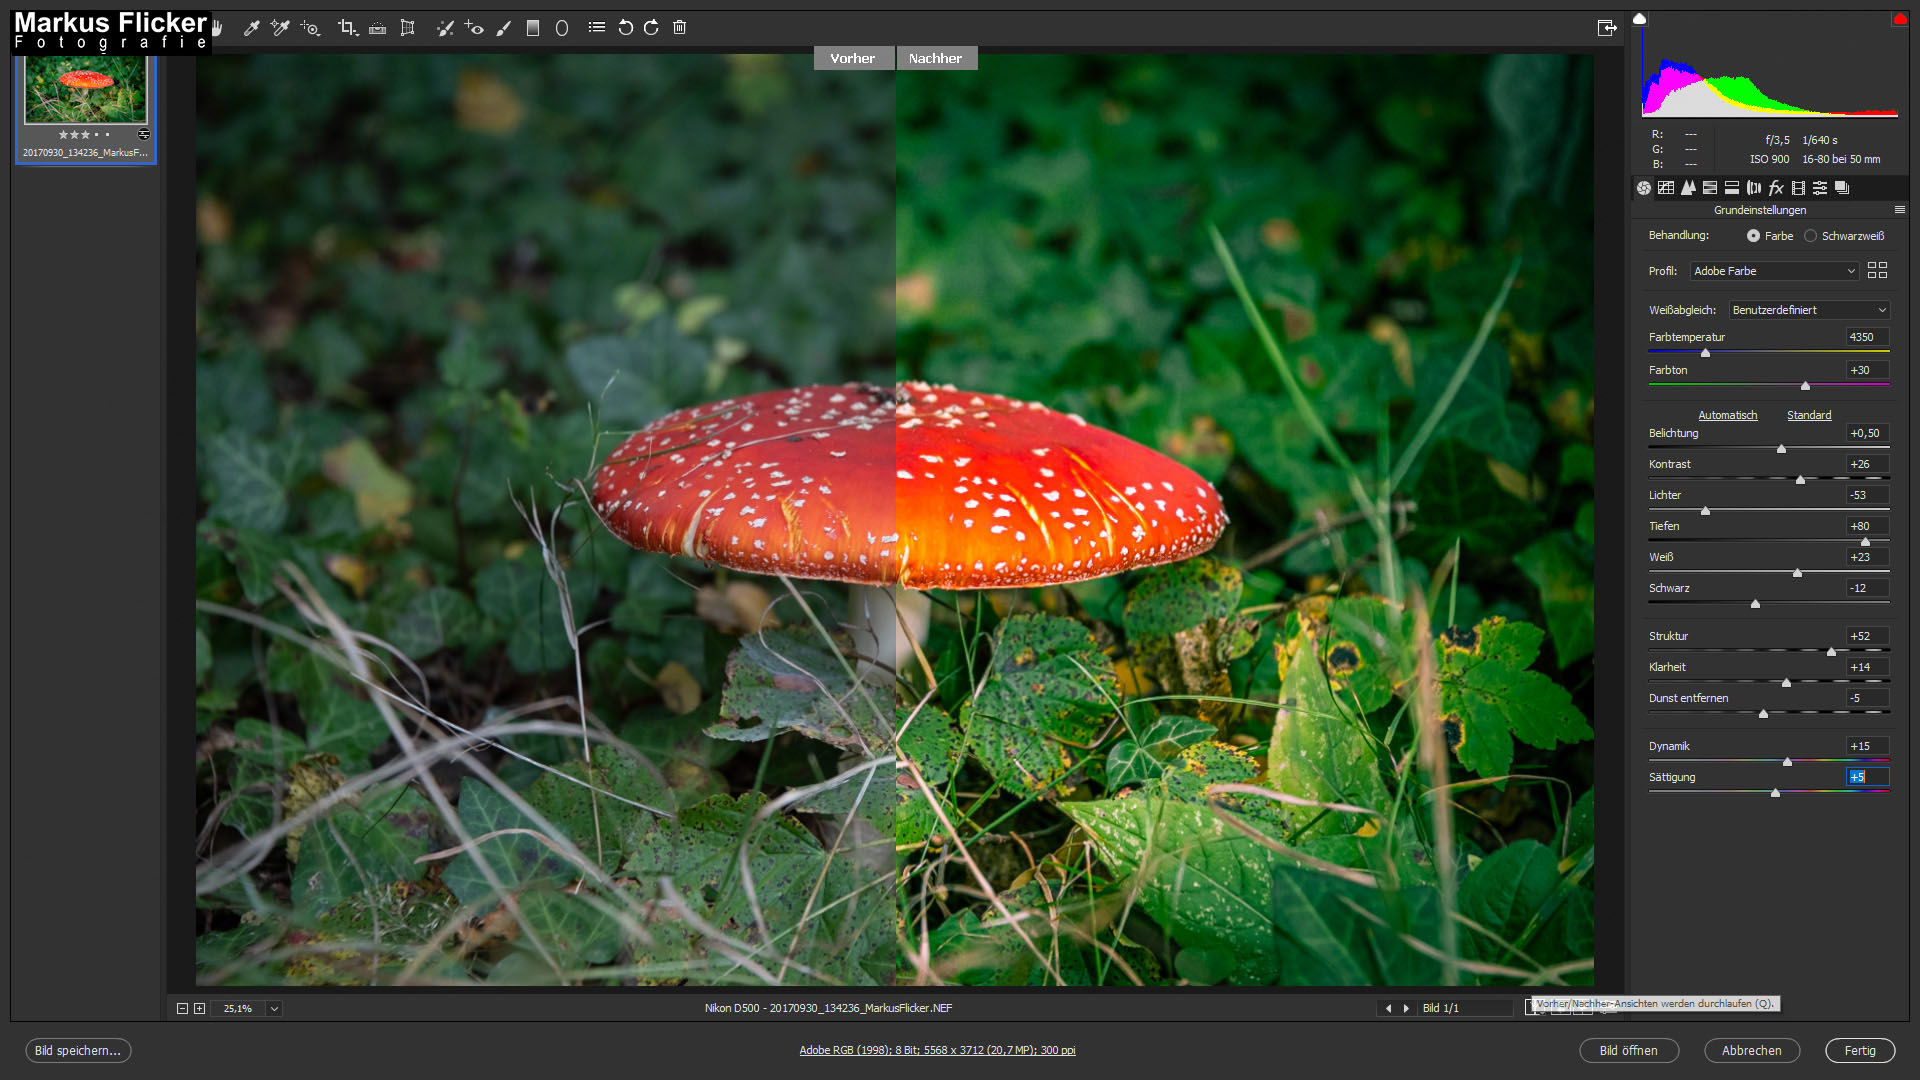 Der Fliegenpilz (Amanita muscaria) Adobe Photoshop Camera RAW Vorher Nacher